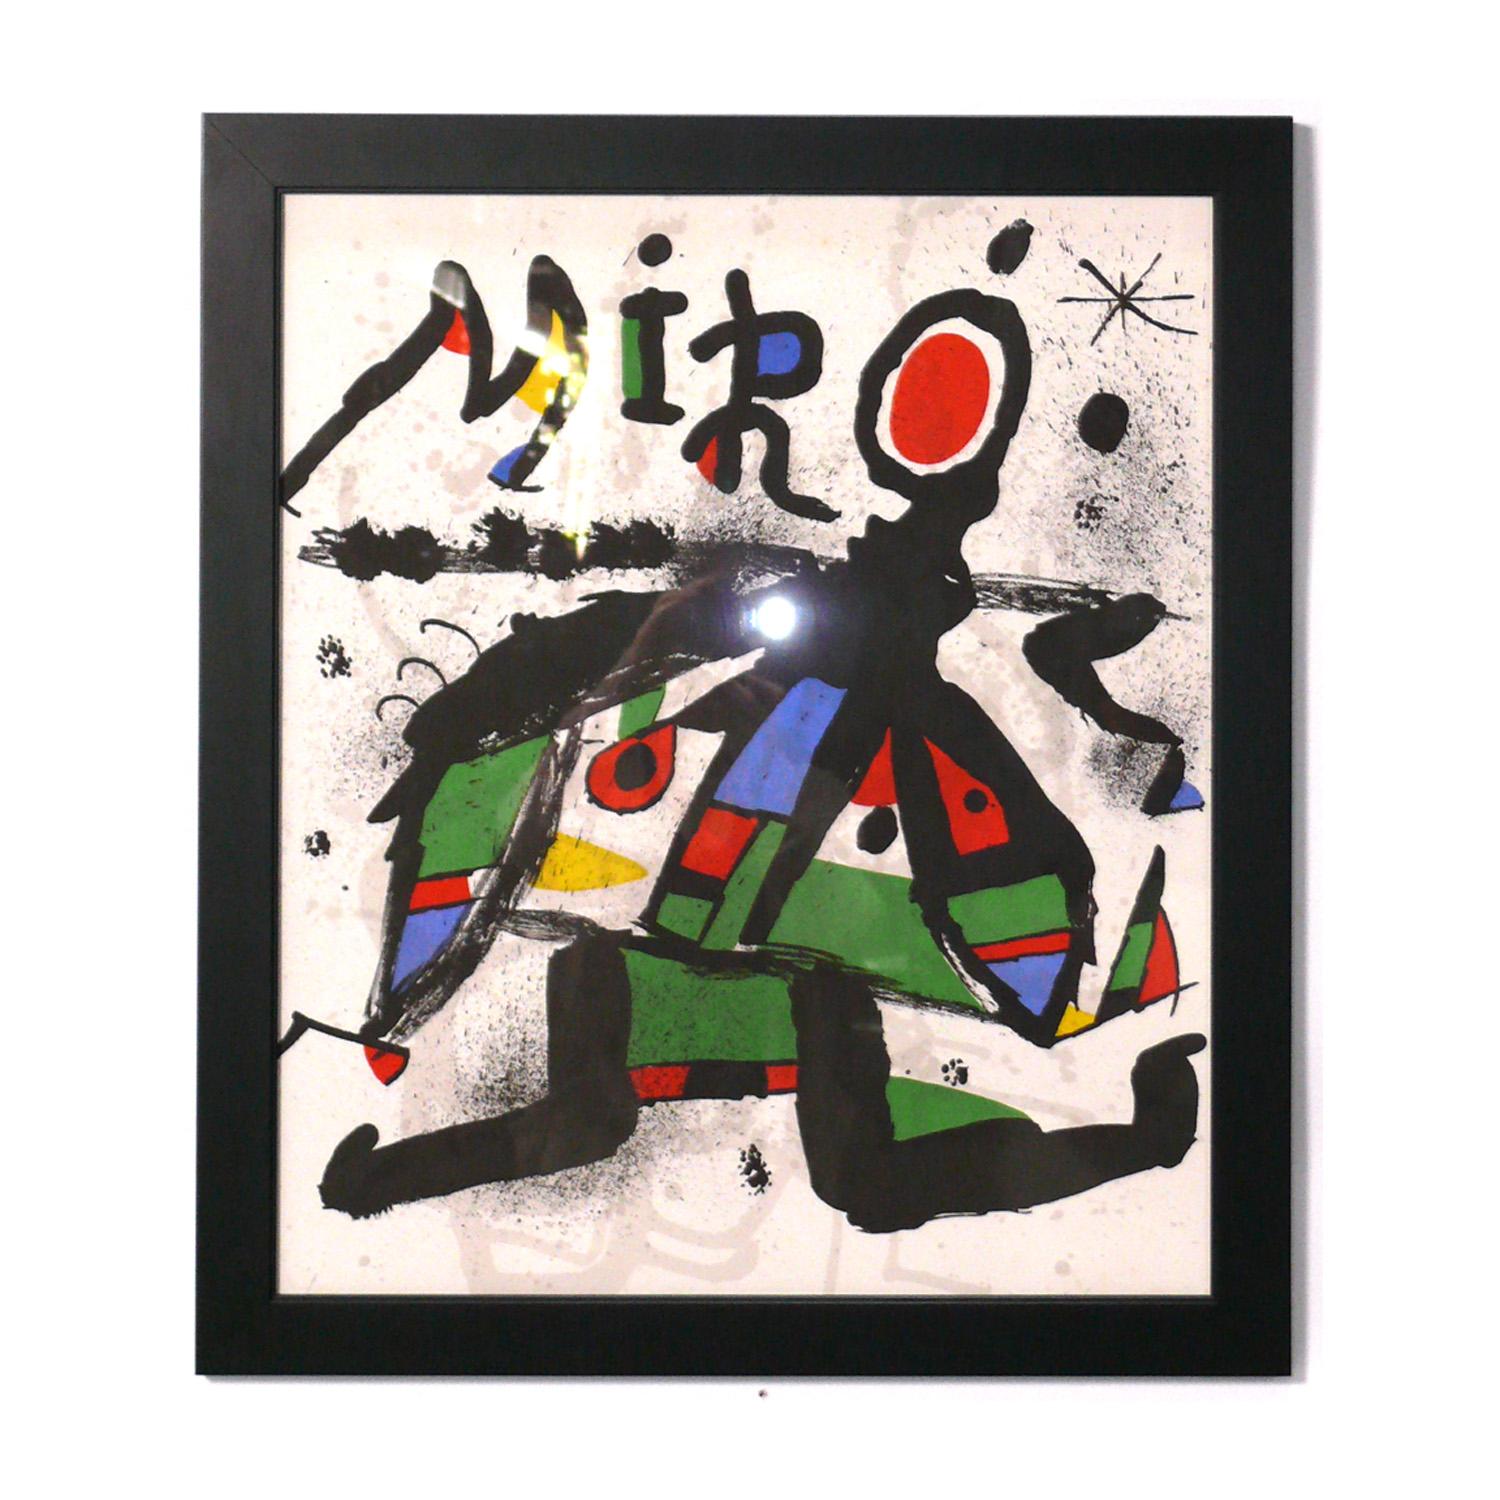 Auswahl von Joan Miros Farbsiebdrucken, französisch, ca. 1960er Jahre. Der Preis liegt bei 650 $ pro Stück oder 1500 $ für alle drei. Sie wurden kürzlich professionell in sauberen, schwarz lackierten Galerierahmen unter UV-beständigem Glas gerahmt.